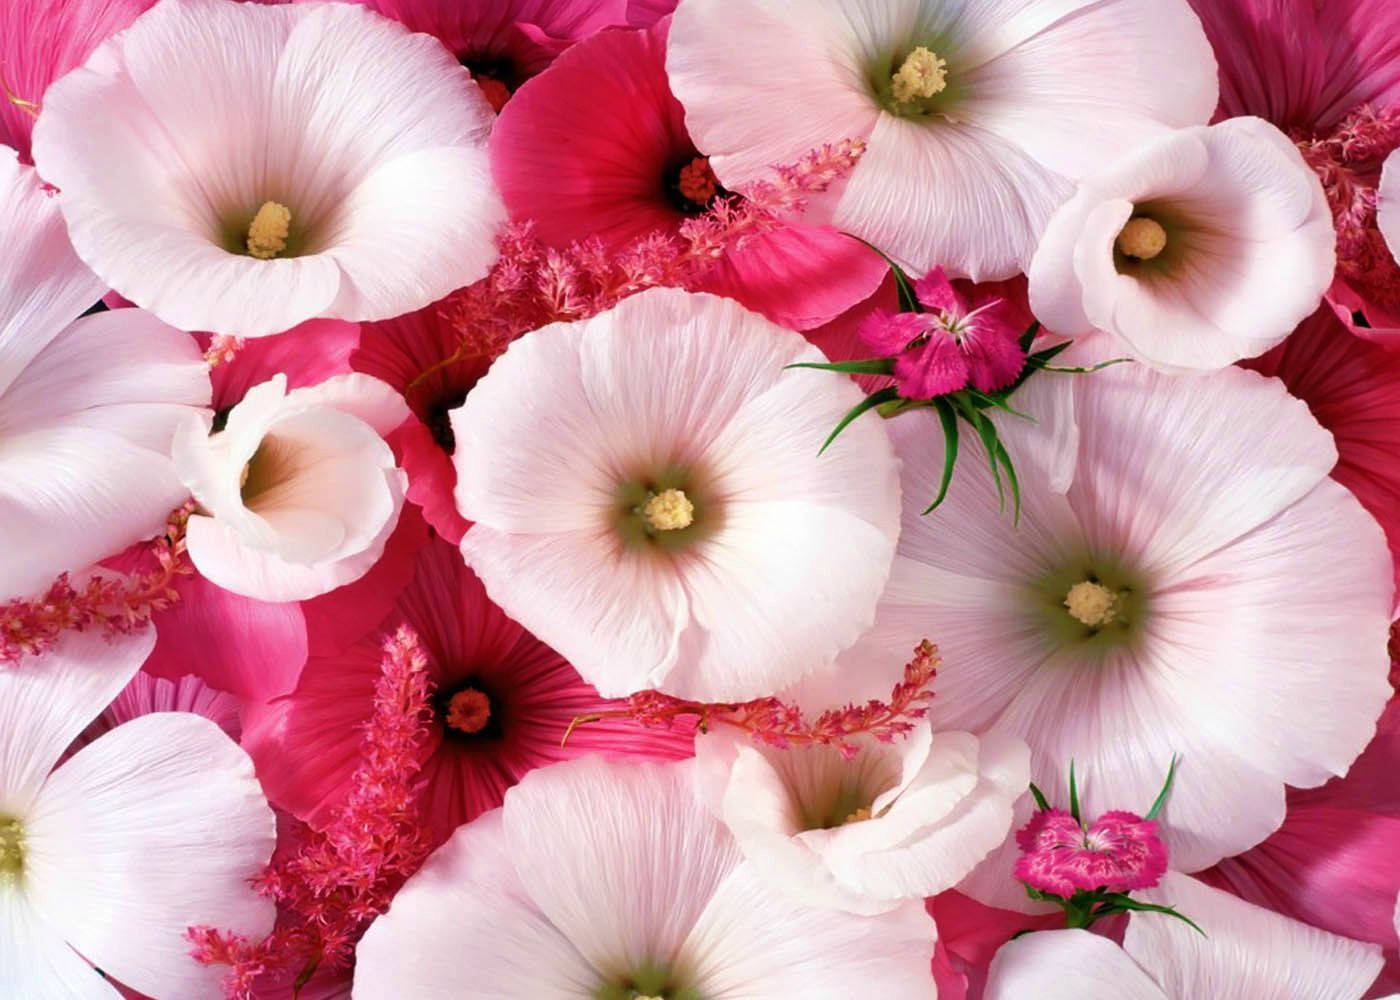 World's Most Beautiful Flowers Mallow Malope